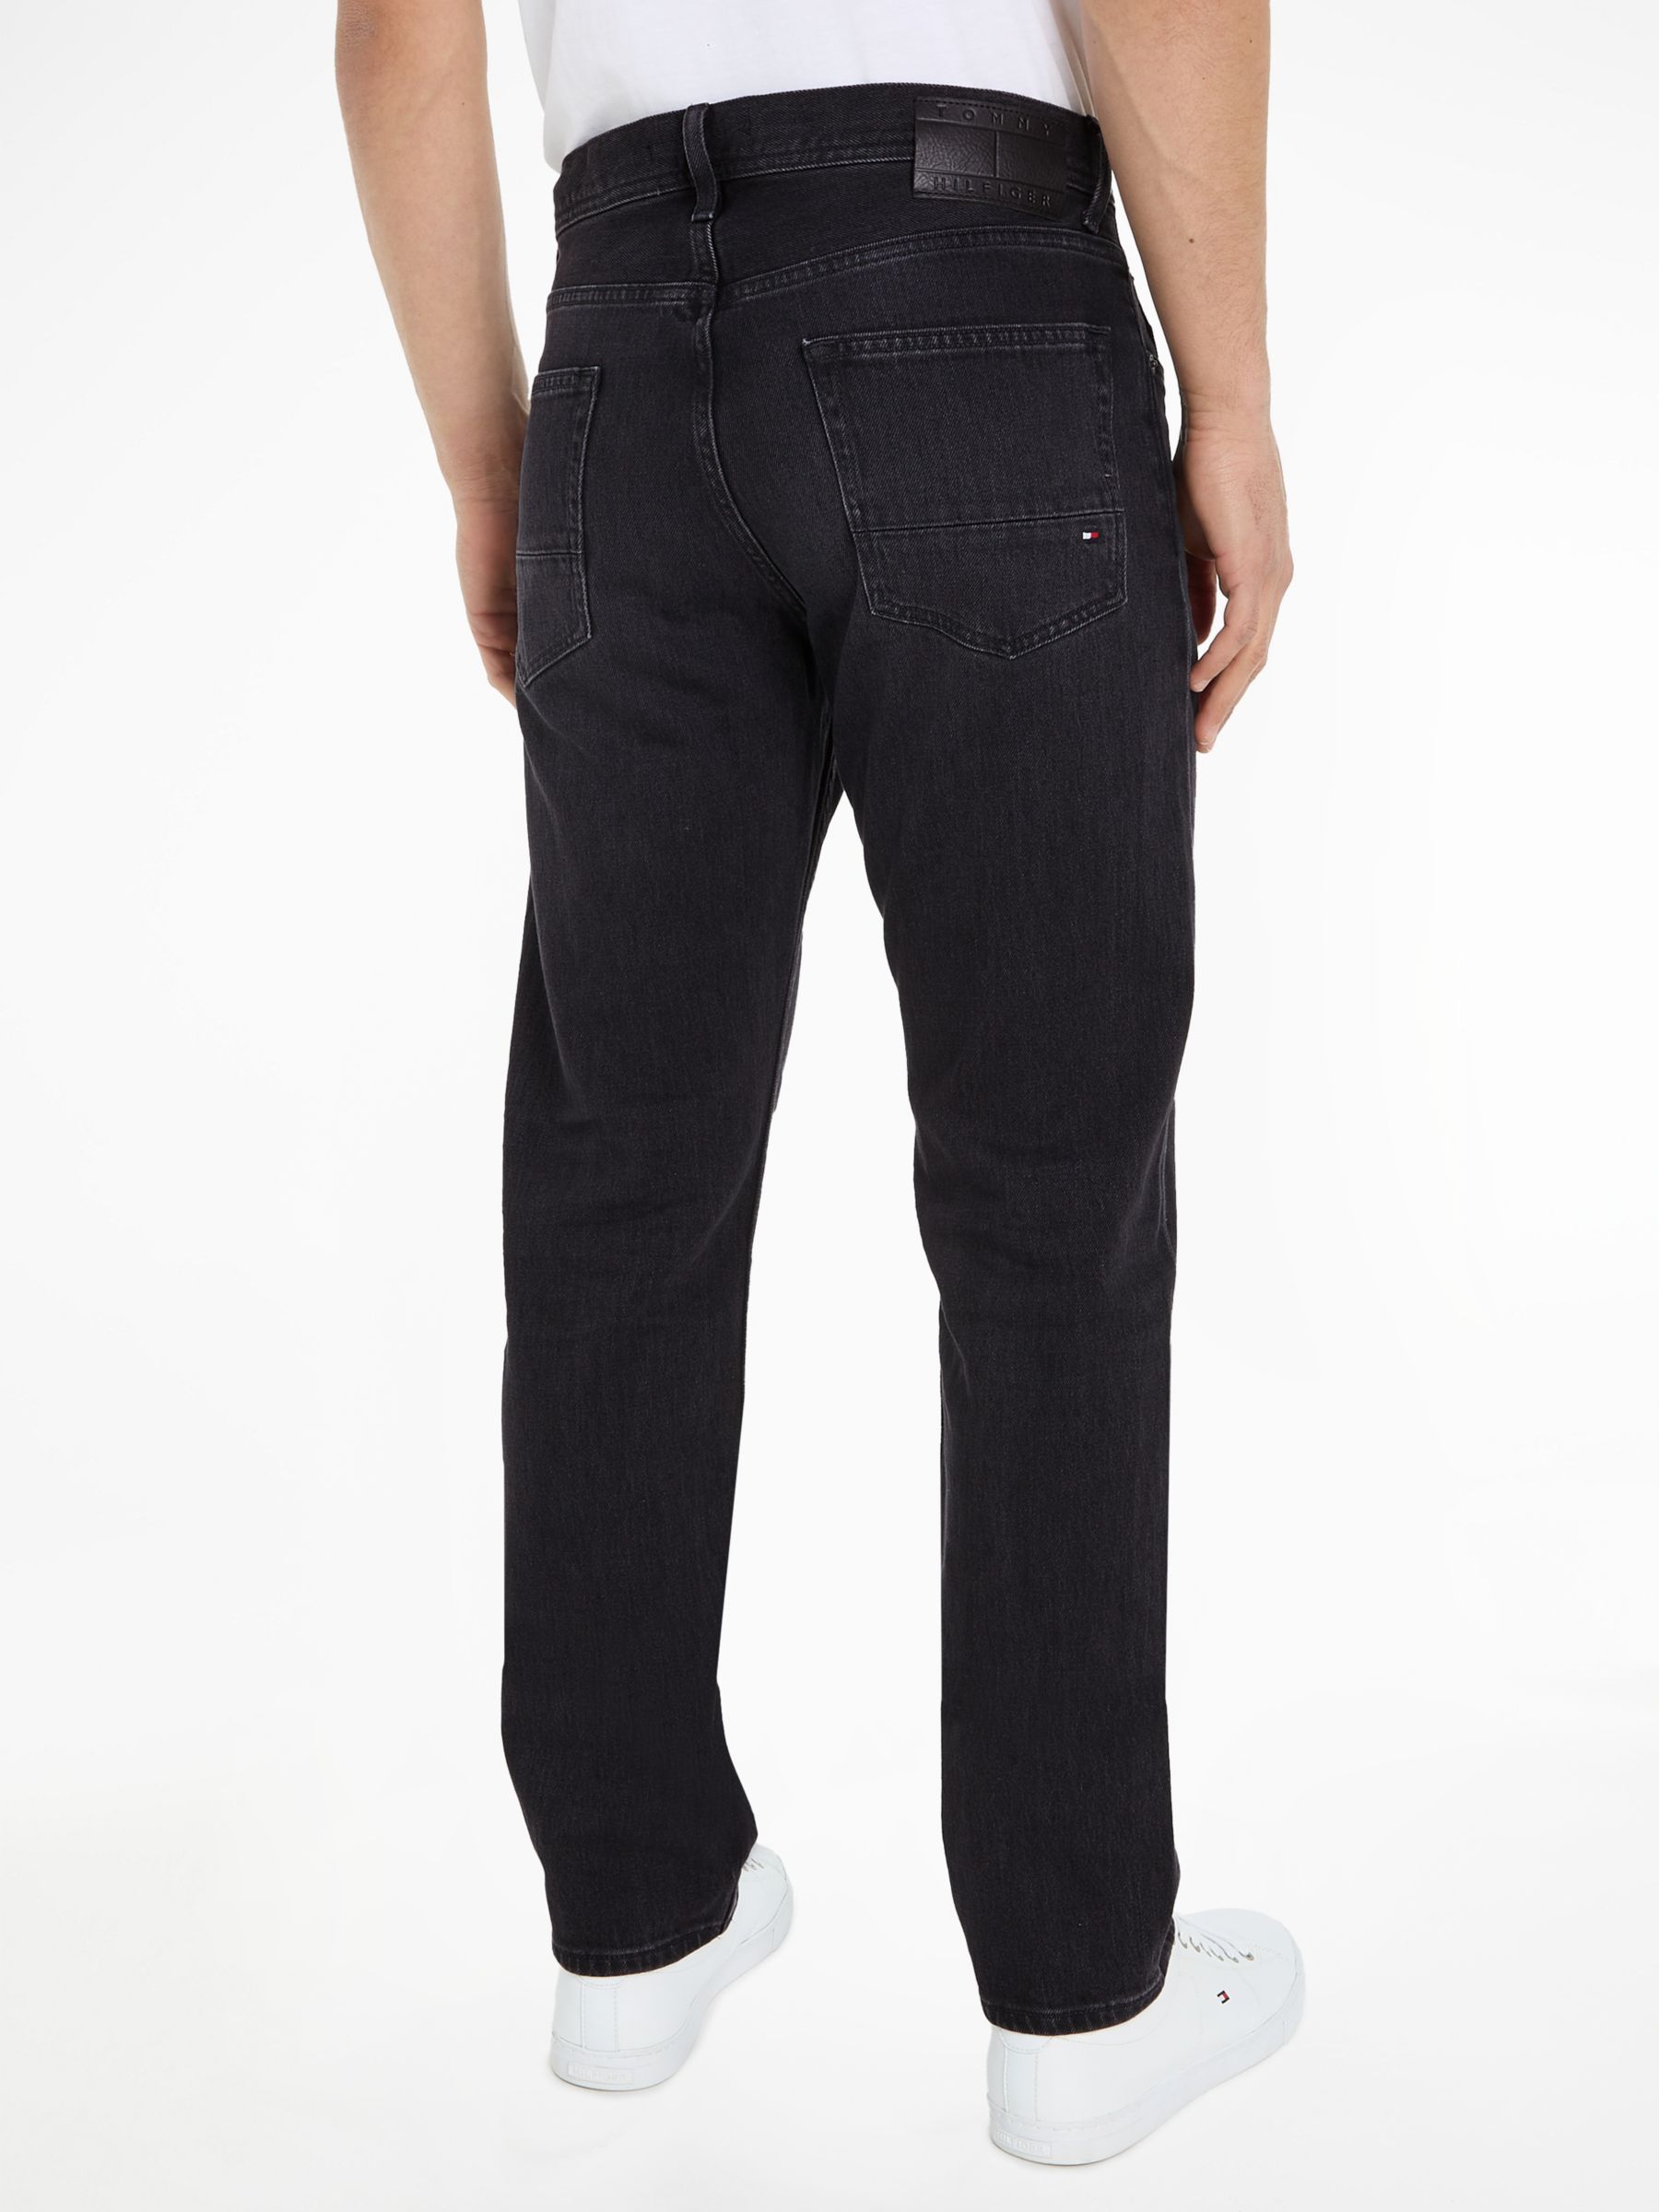 Tommy Hilfiger Mercer Jeans, Black, 32R